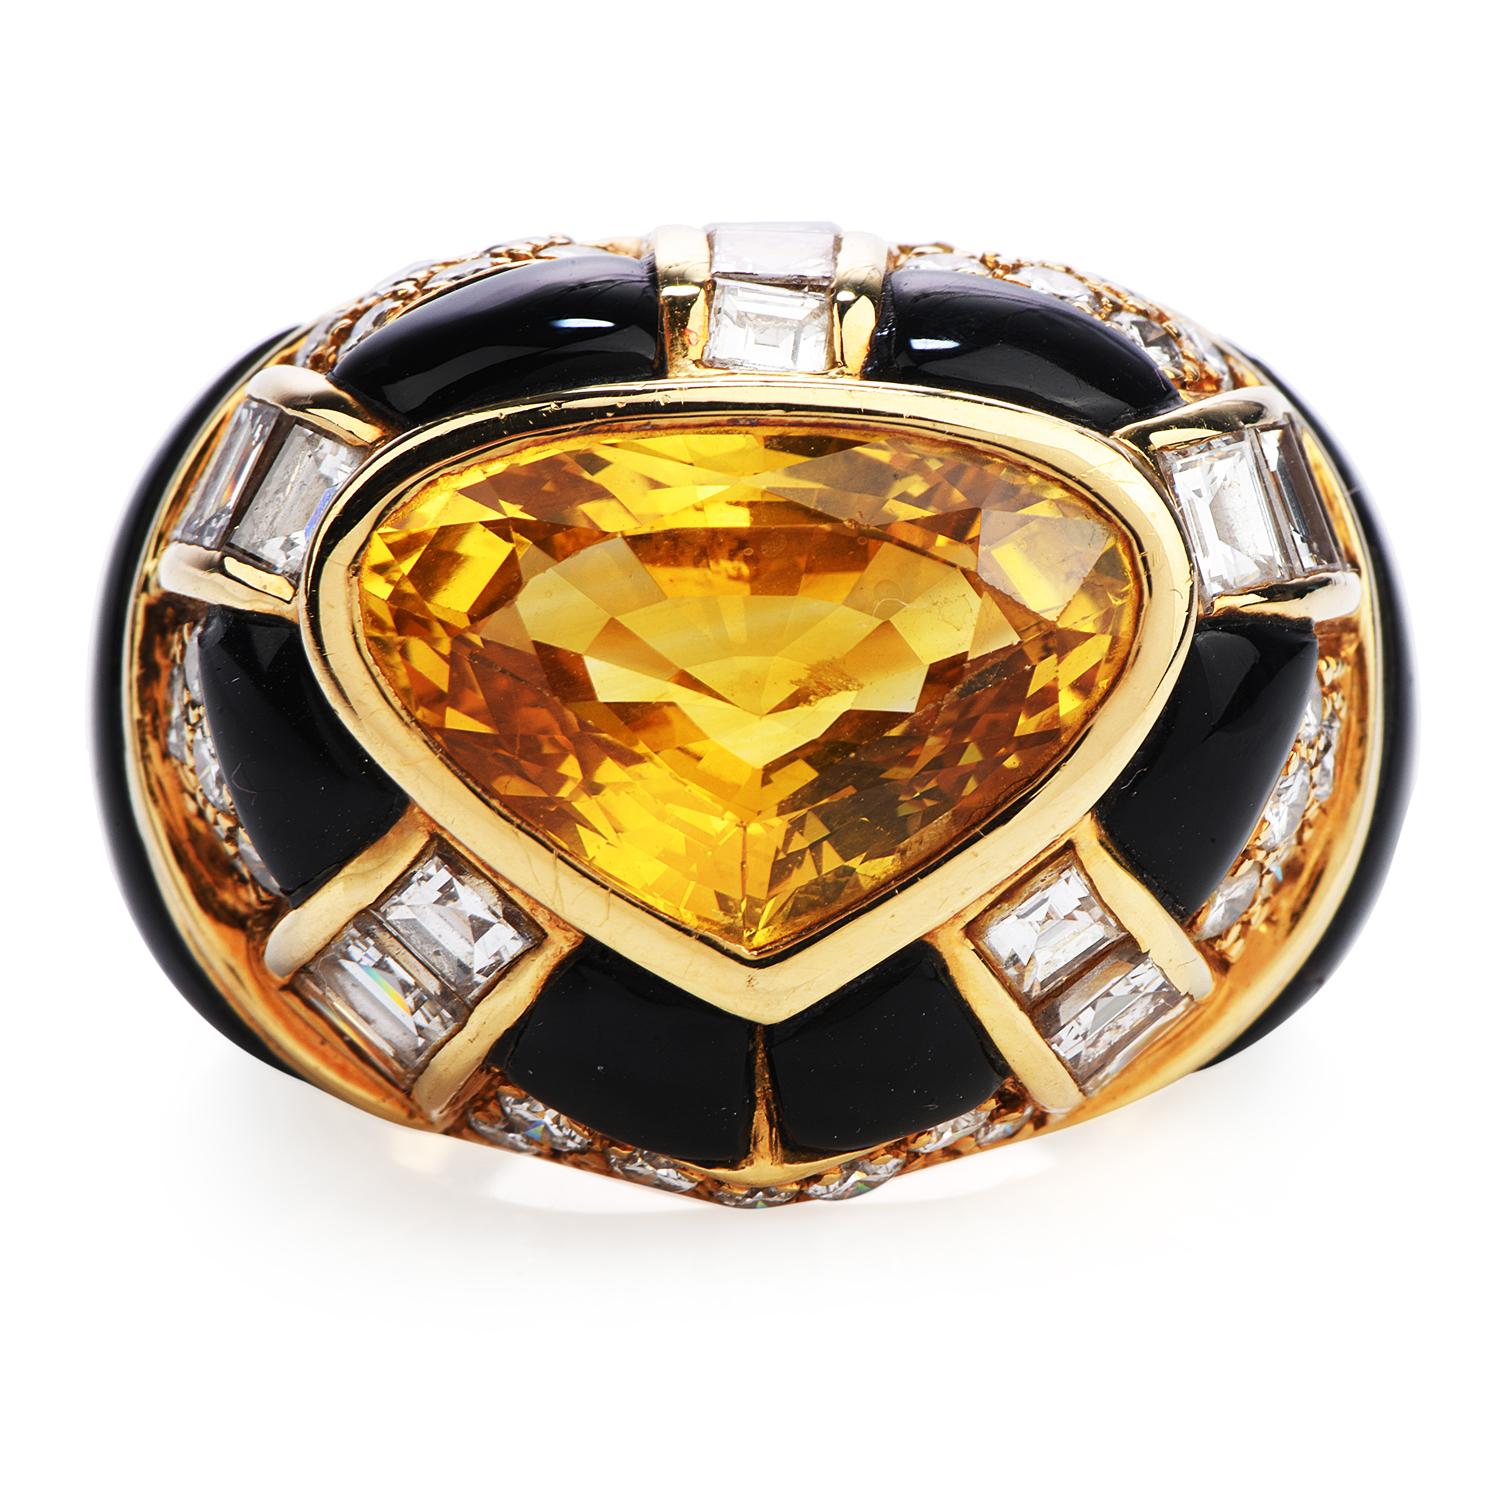  Ce modèle vintage des années 1980  la large bague en saphir jaune sri-lankais et diamant certifiée par le GIA est la bague idéale.

Réalisé en or jaune 18 carats massif et lourd, le centre est orné d'un saphir jaune certifié GIA, en provenance du